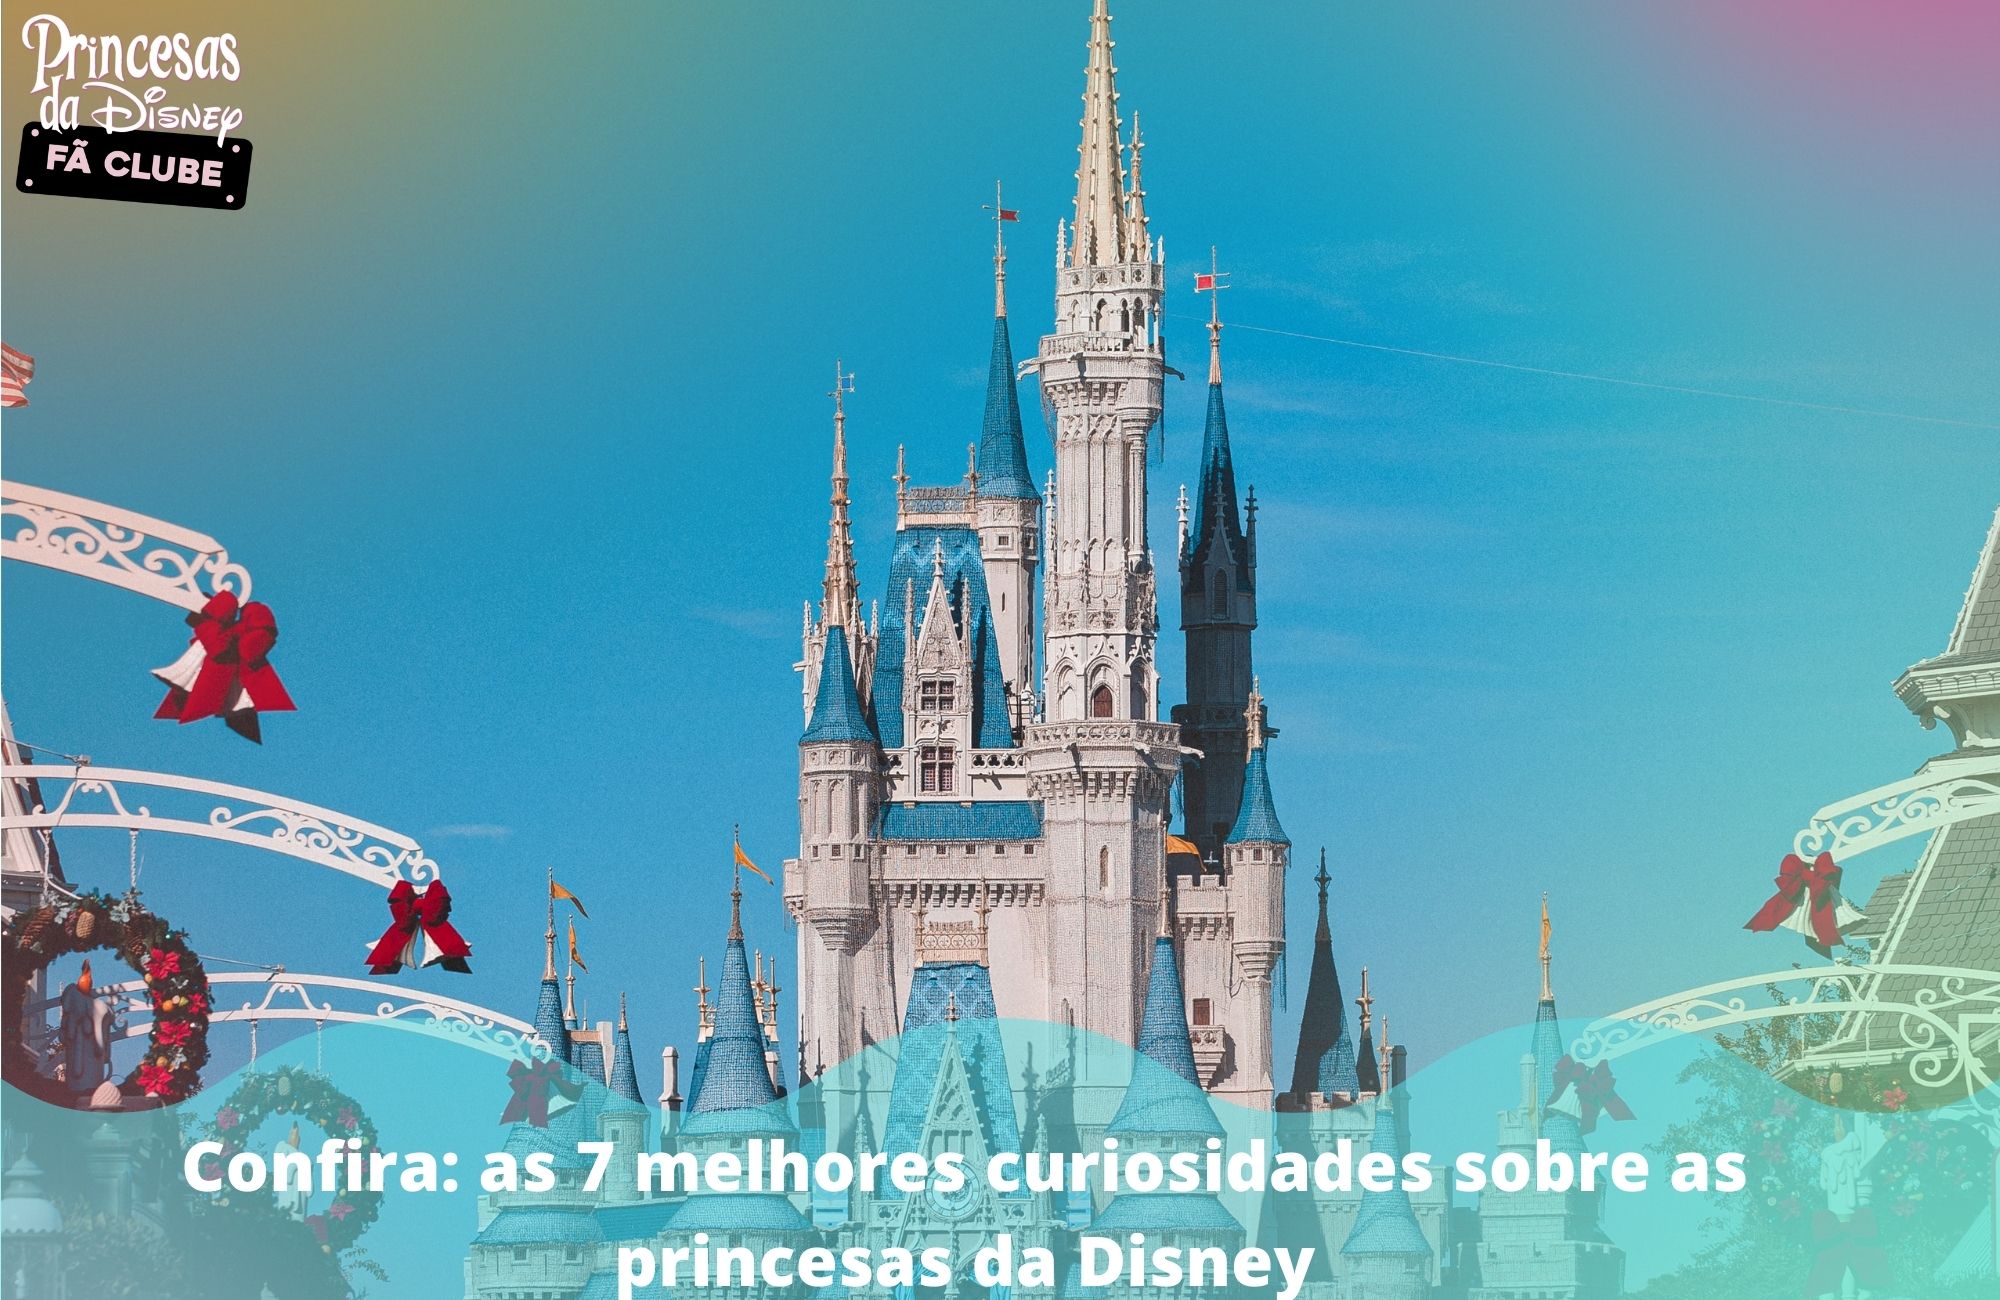 Confira: as 7 melhores curiosidades sobre as princesas da Disney